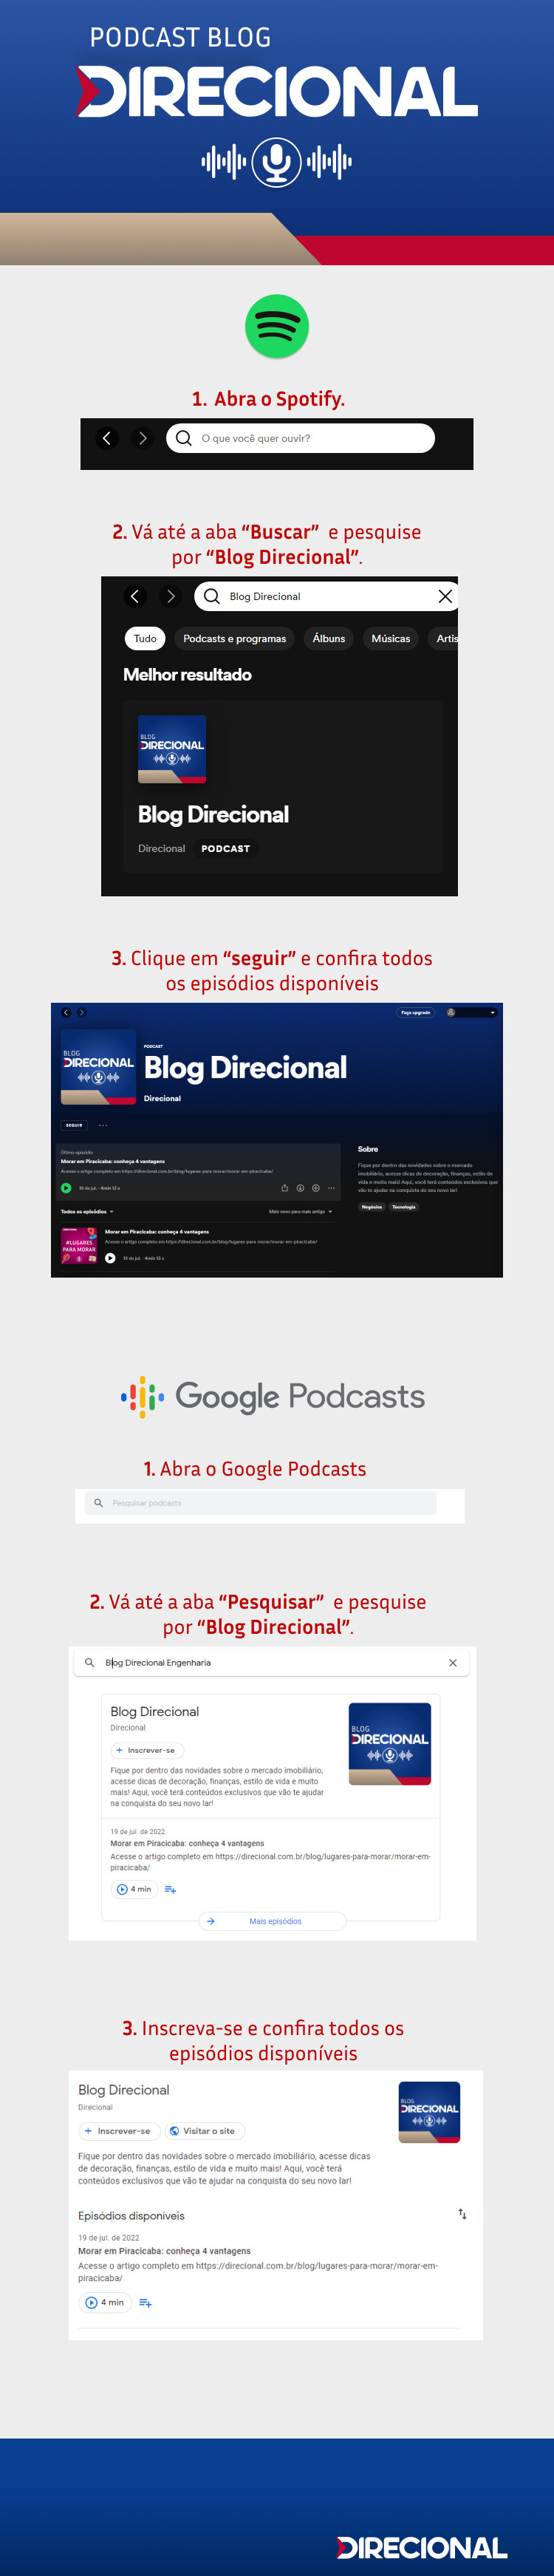 podcast blog direcional 